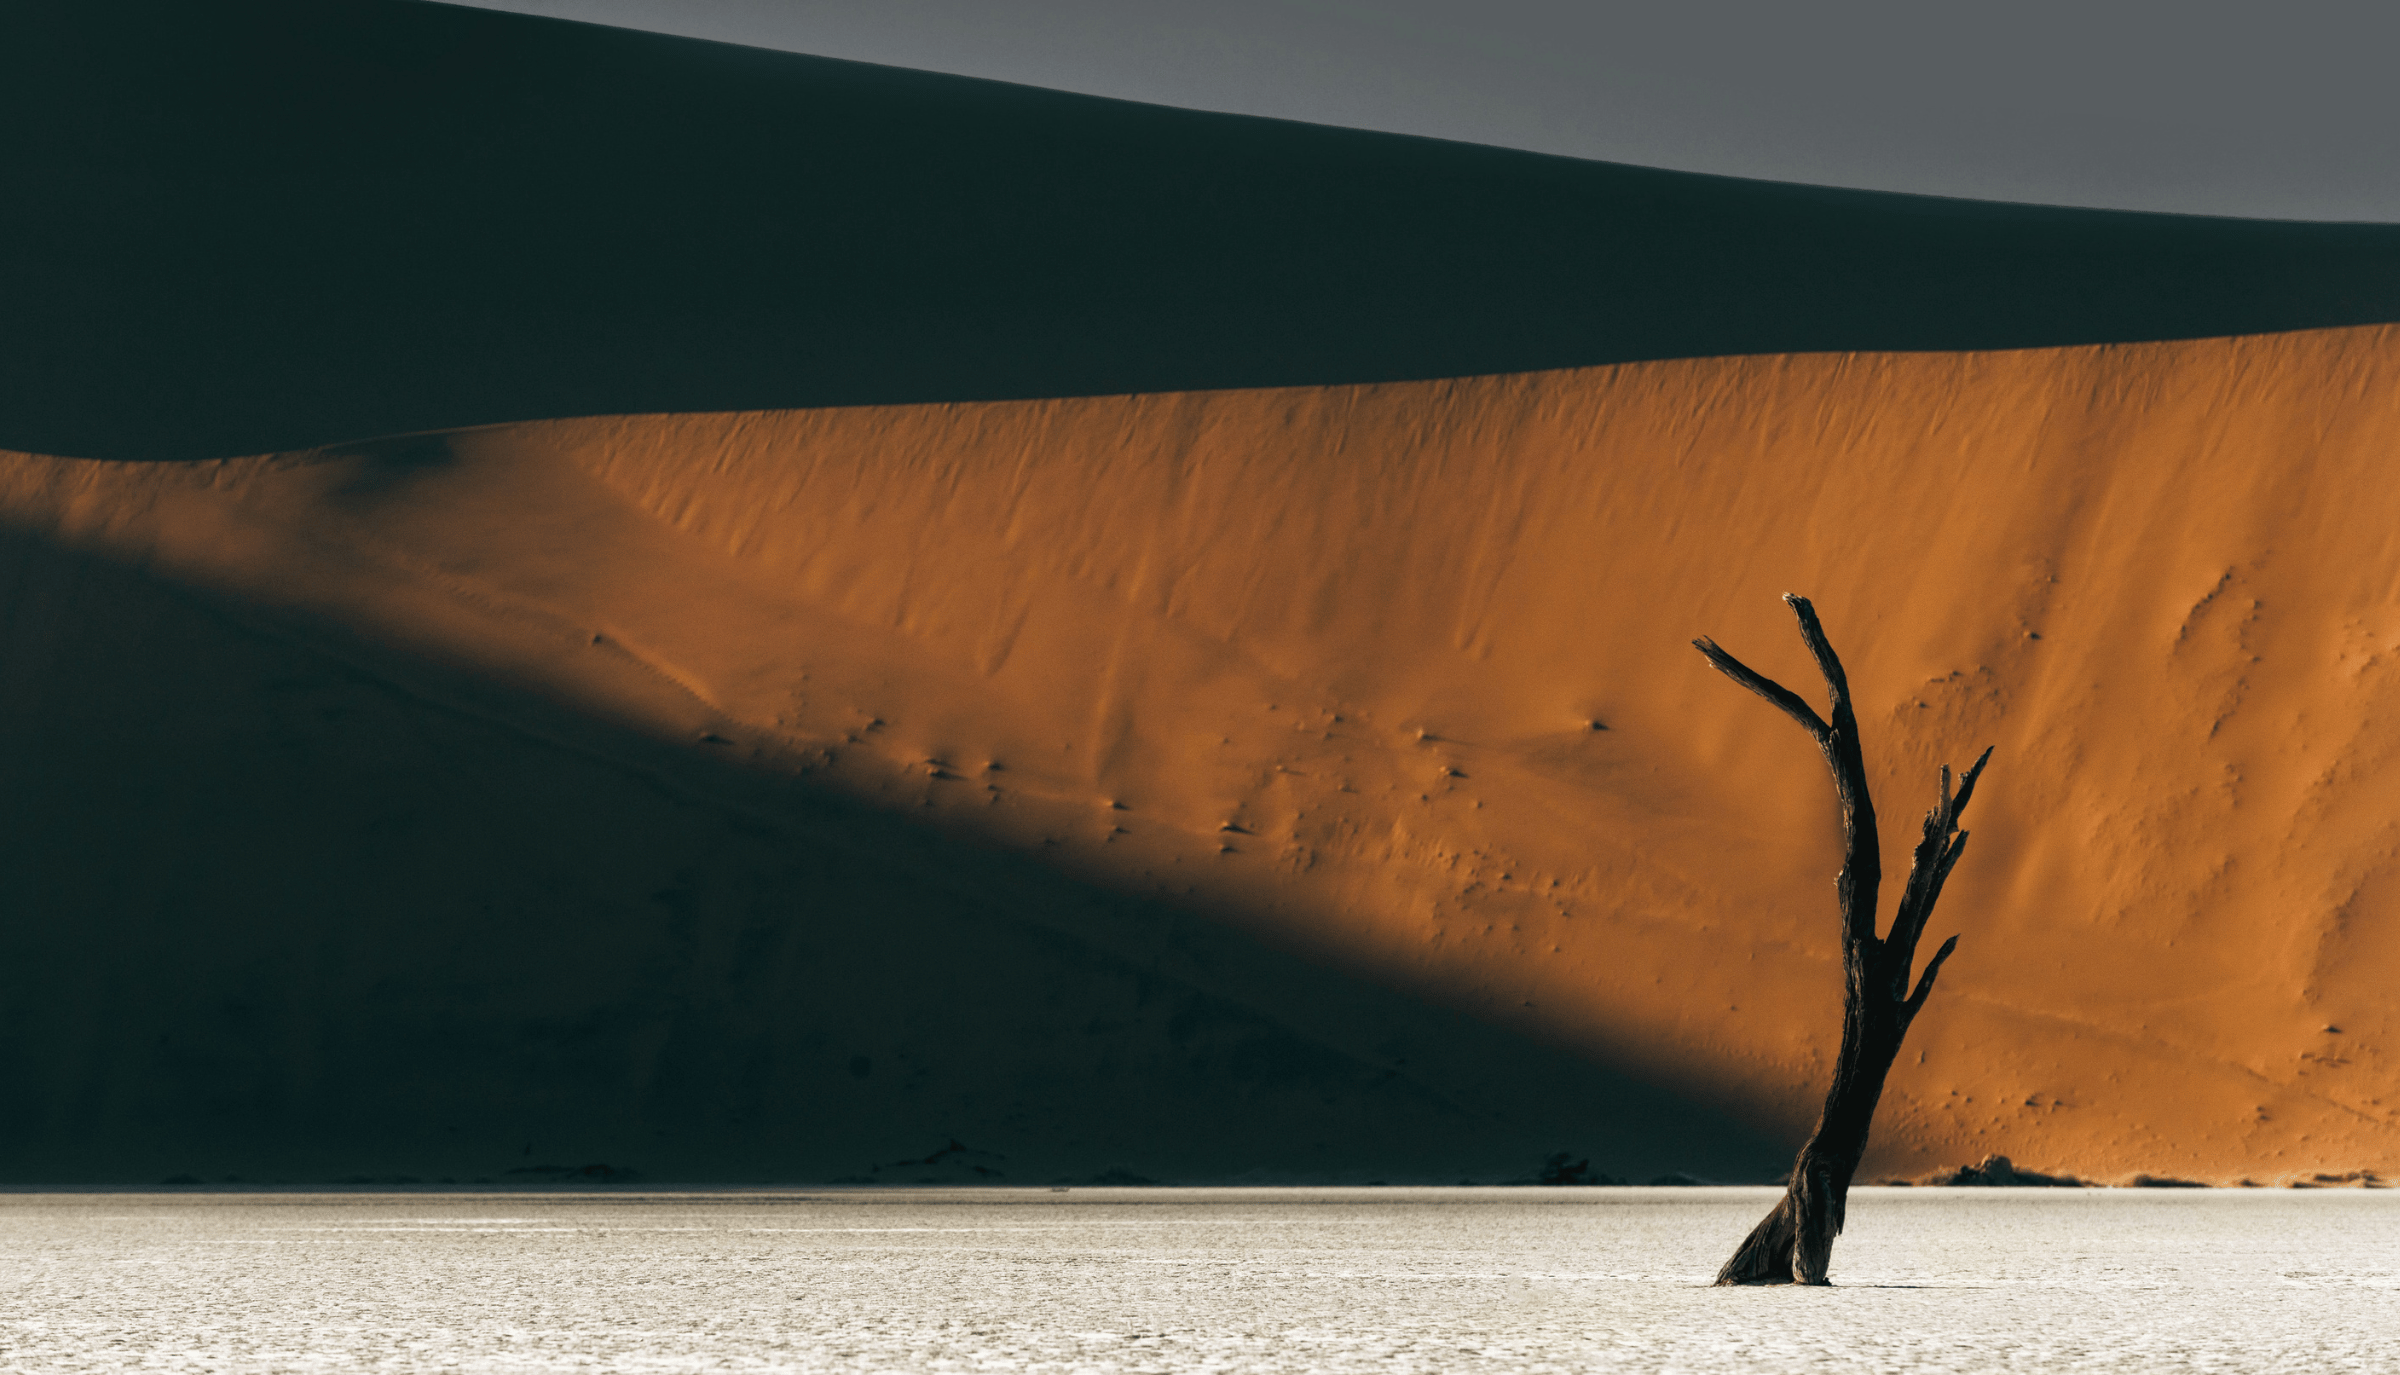 Désert du Namib